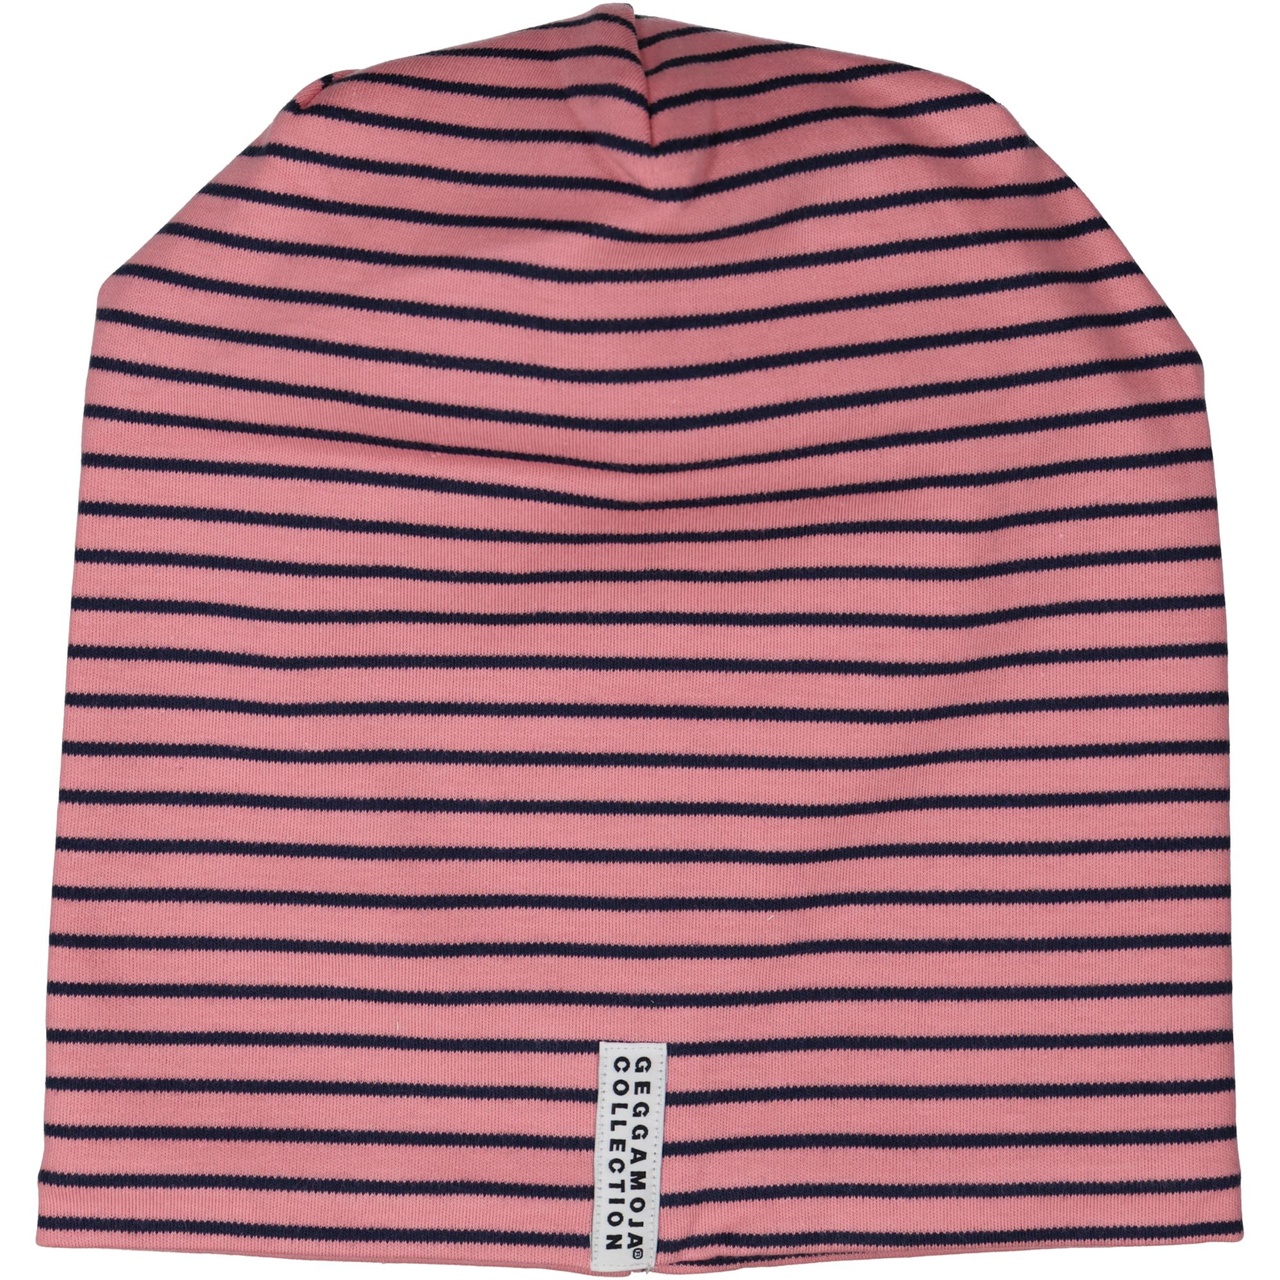 Topline fleece cap Pink/navy L 6 - Adult